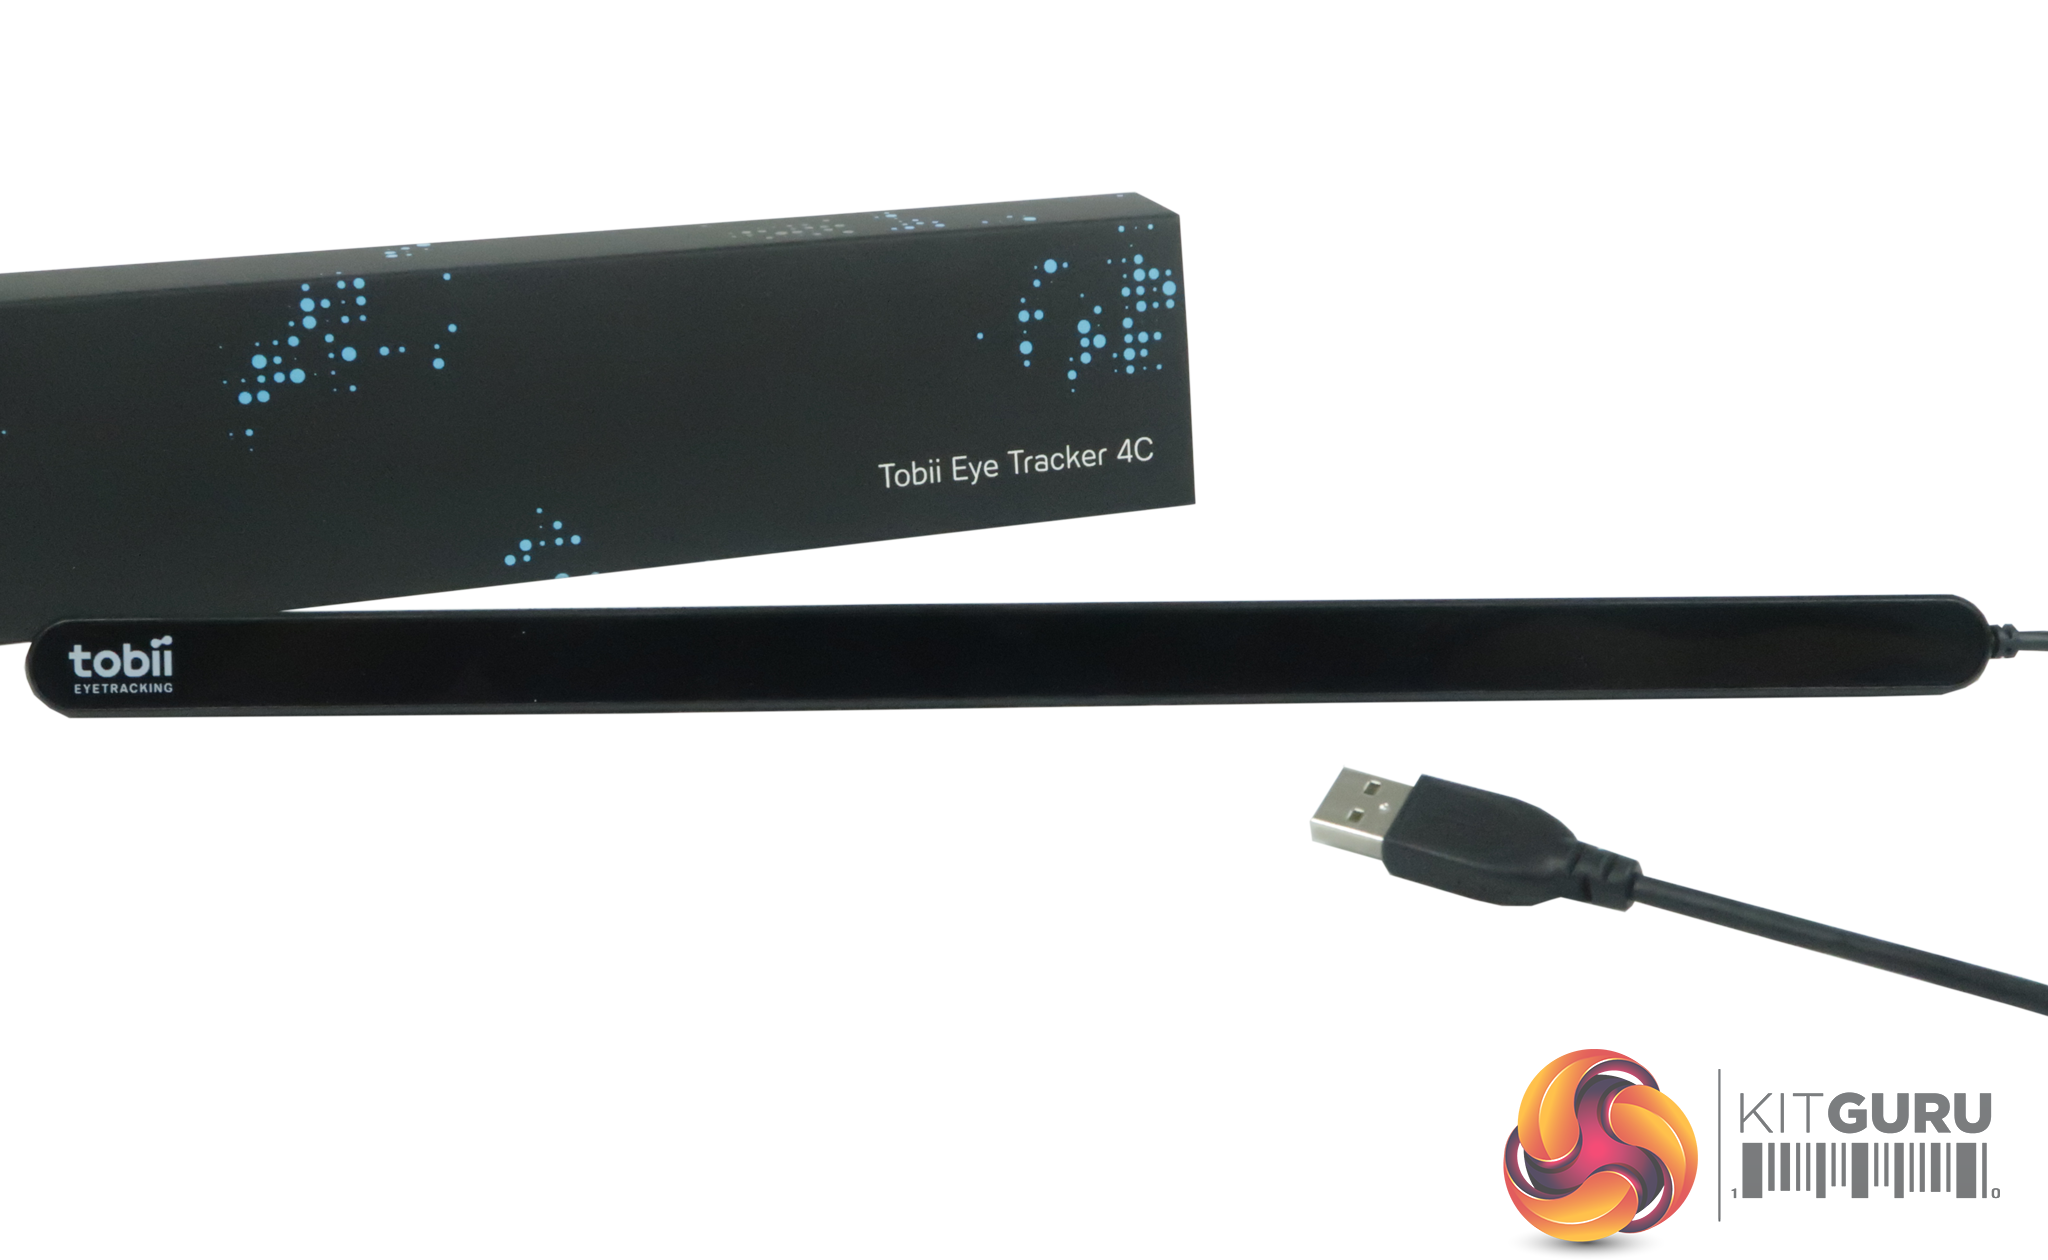 Tobii Eye tracker 4C – USB 2.0 (PC Gaming Eye and Head Tracker)